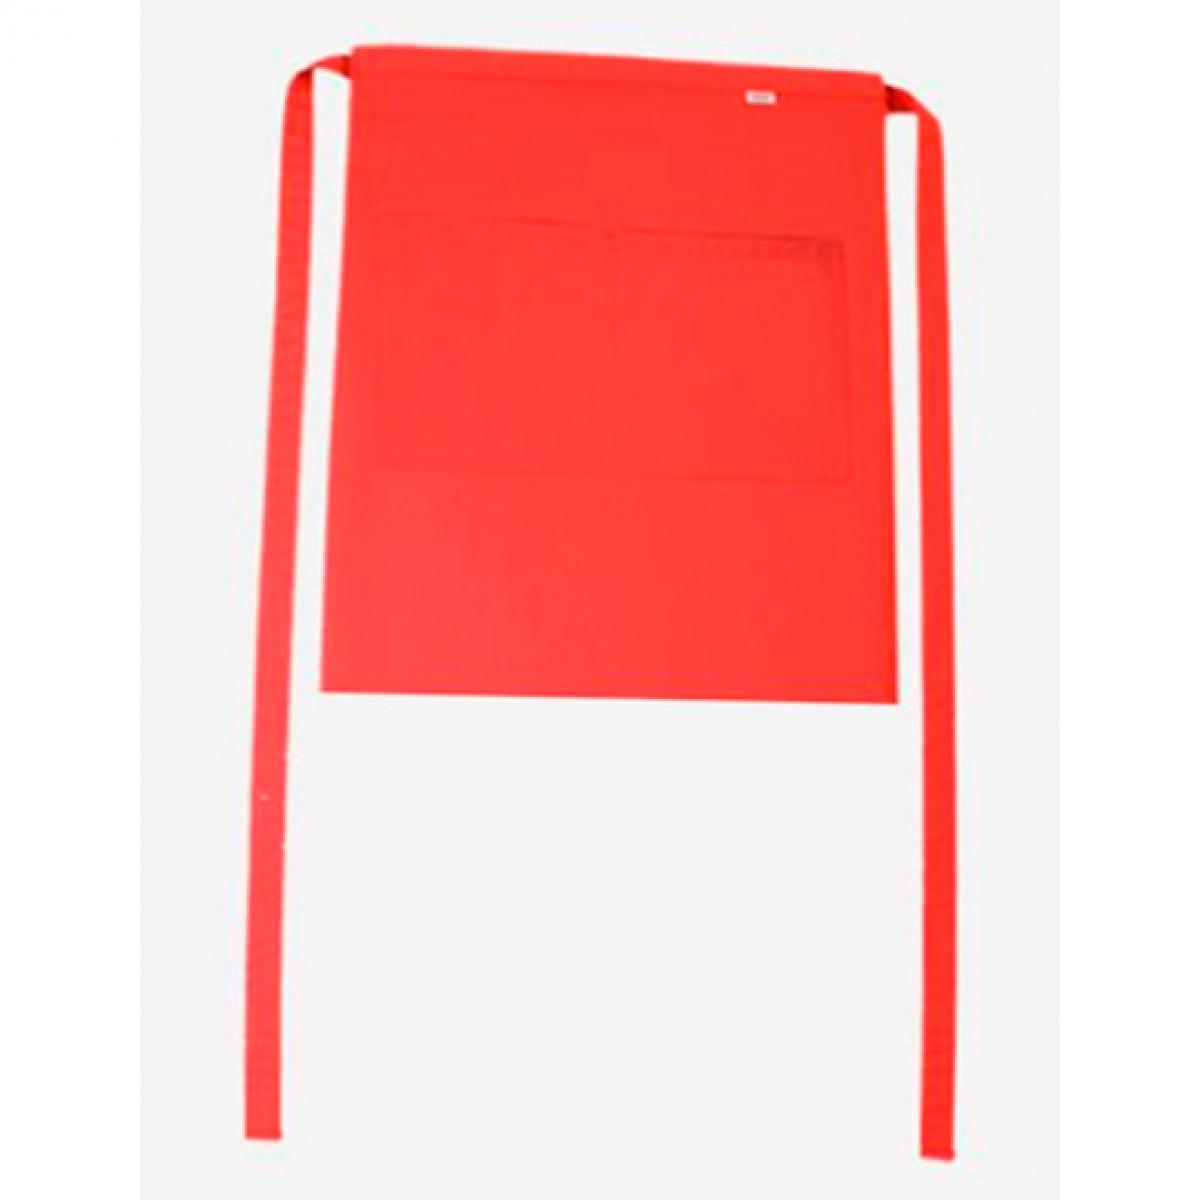 Hersteller: CG Workwear Herstellernummer: 01262-01 Artikelbezeichnung: Bistroschürze Roma Bag 50 x 78 cm Farbe: Red